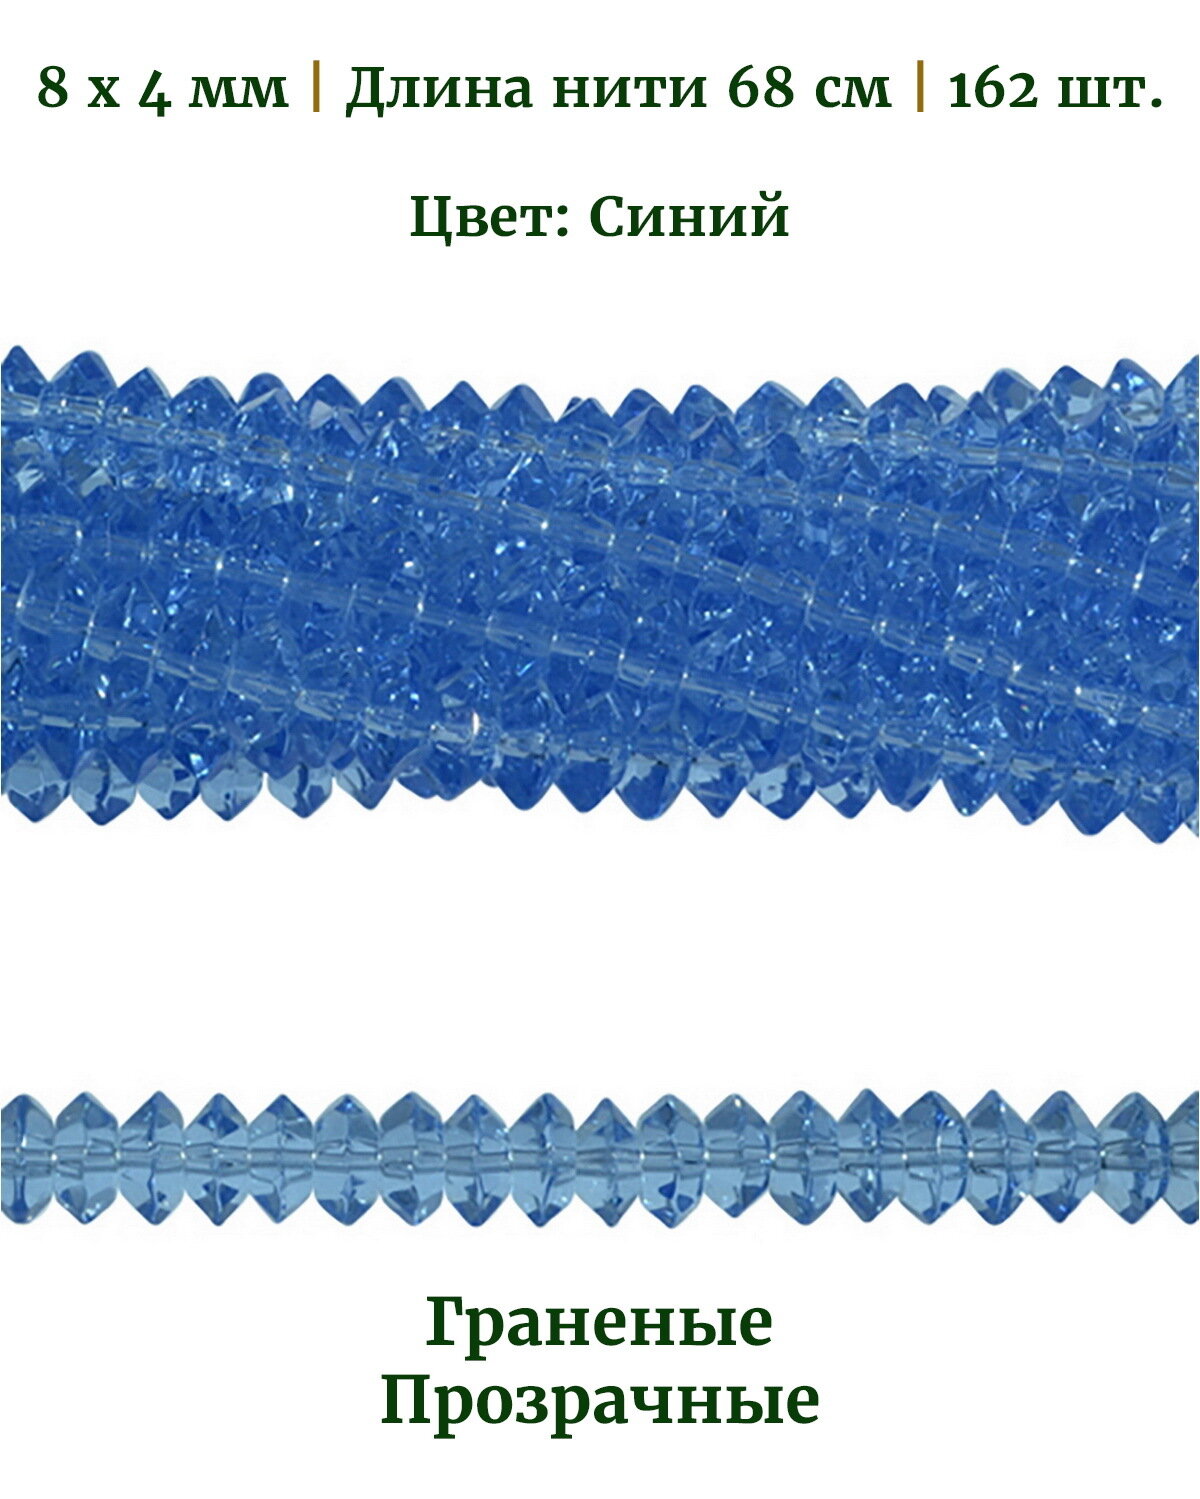 Бусины стеклянные граненые прозрачные, размер бусин 8х4 мм, цвет синий, длина нити 68 см, 162 шт.